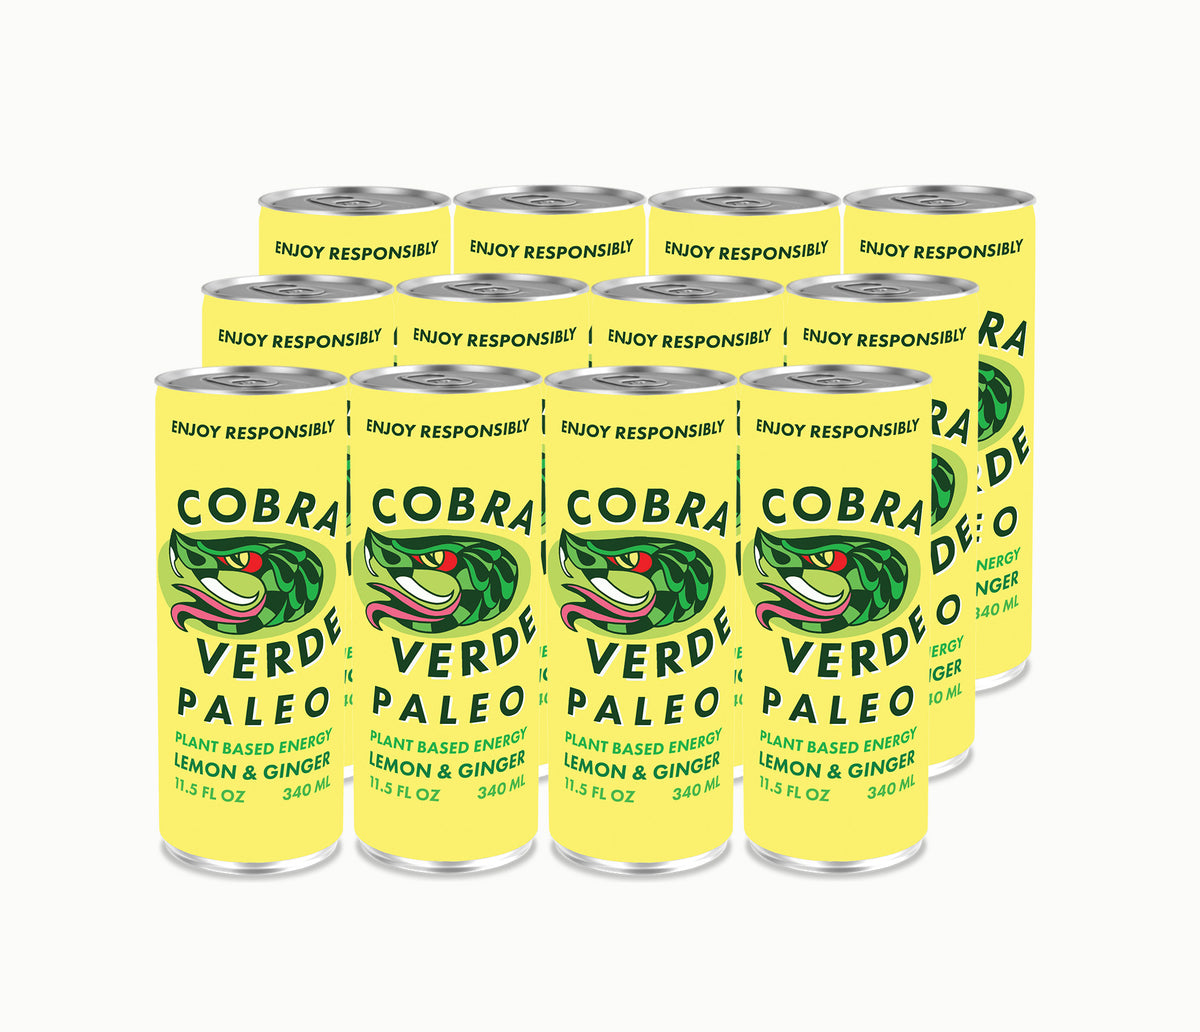 Cobra Verde Paleo Lemon Ginger (12-Pack)